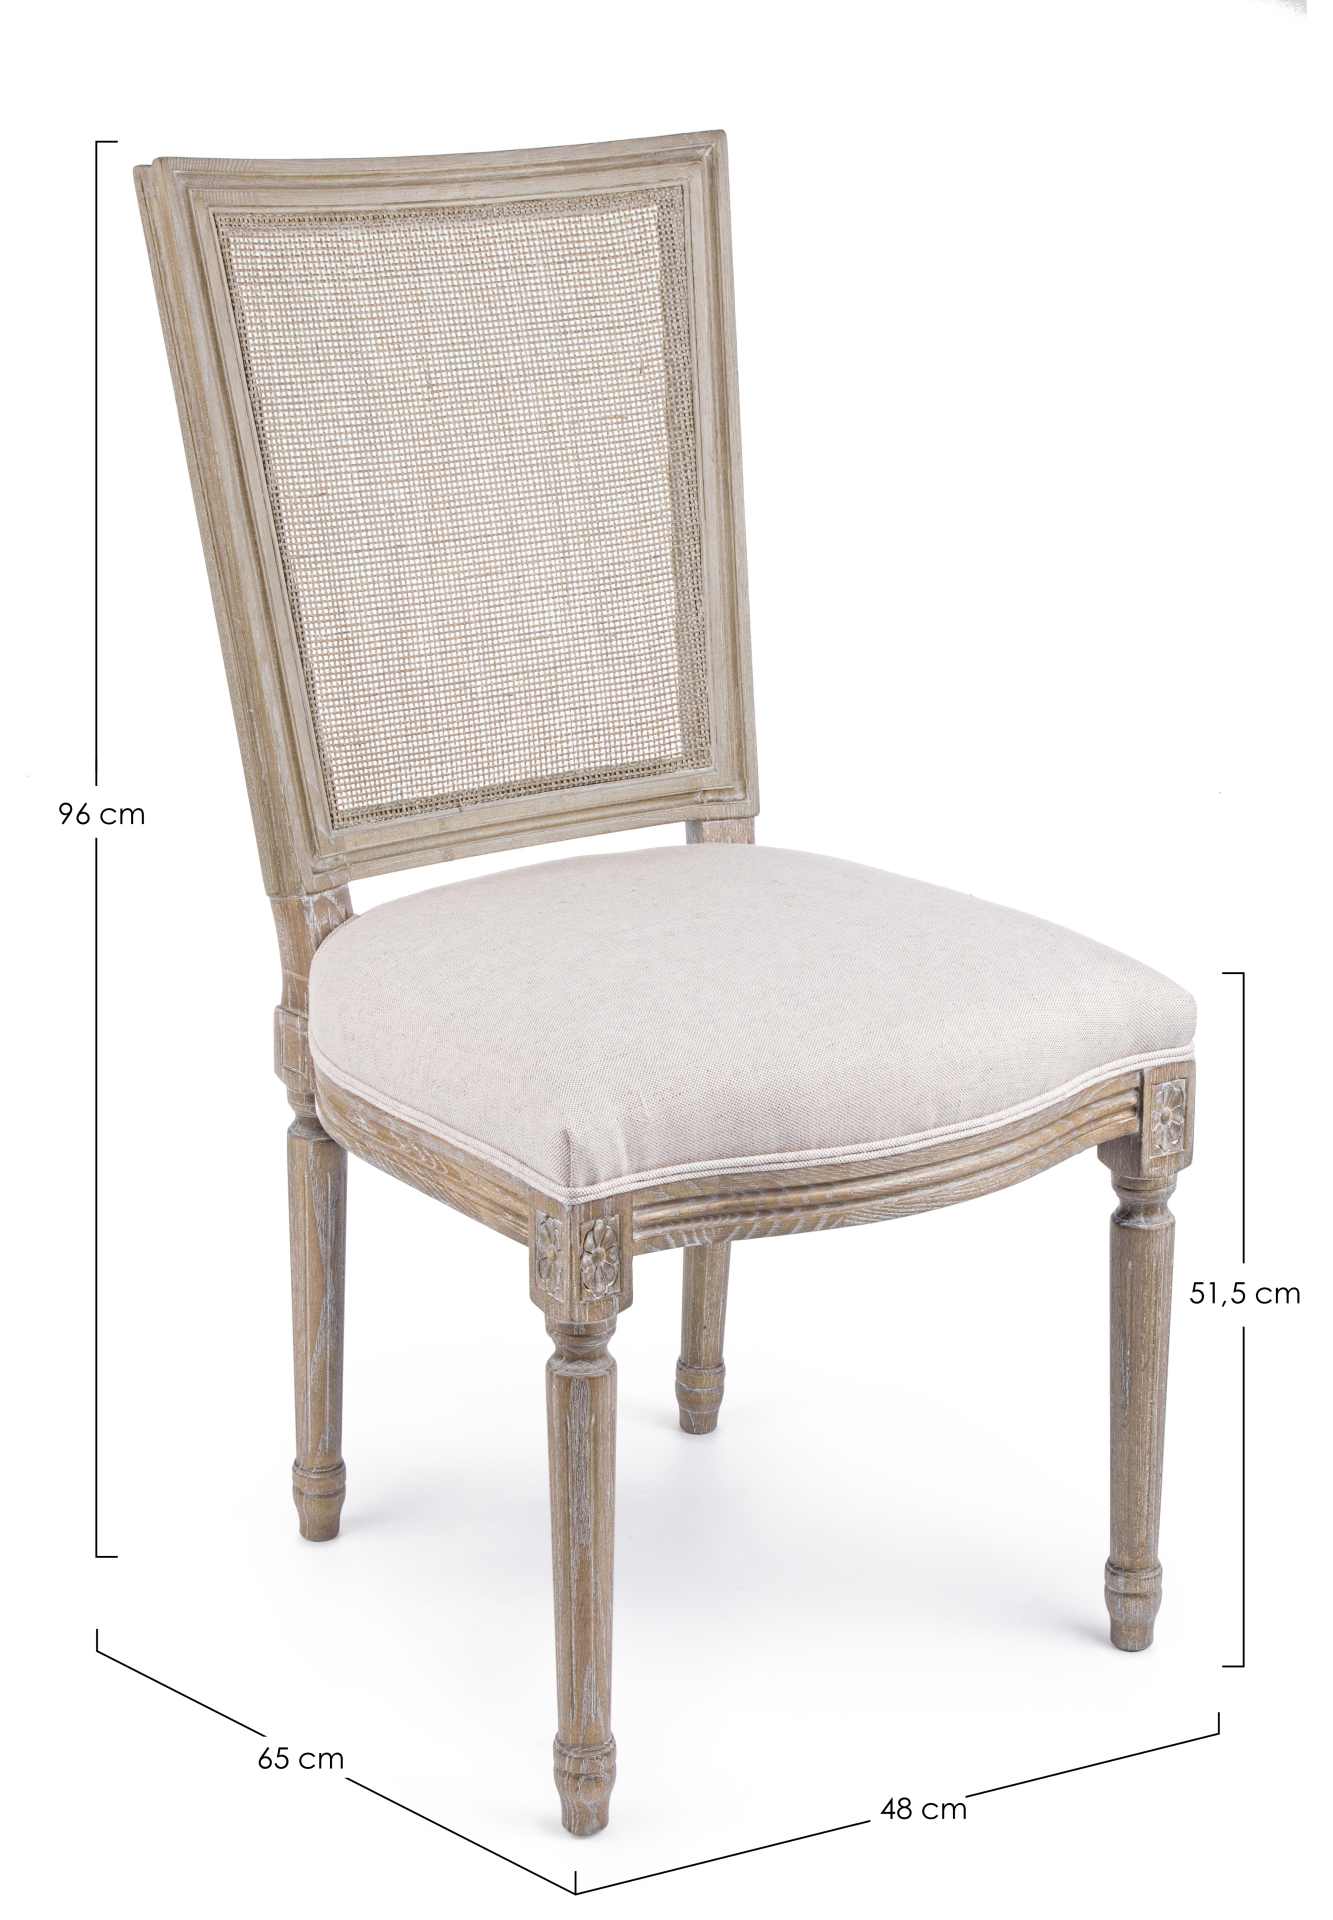 Der Esszimmerstuhl Liliane überzeugt mit seinem klassischen Design. Gefertigt wurde der Stuhl aus Eschenholz, welches einen natürlichen Farbton besitzt. Die Sitzfläche ist aus einem Mix aus Baumwolle und Leinen gefertigt, welche einen Beigen Farbton besit